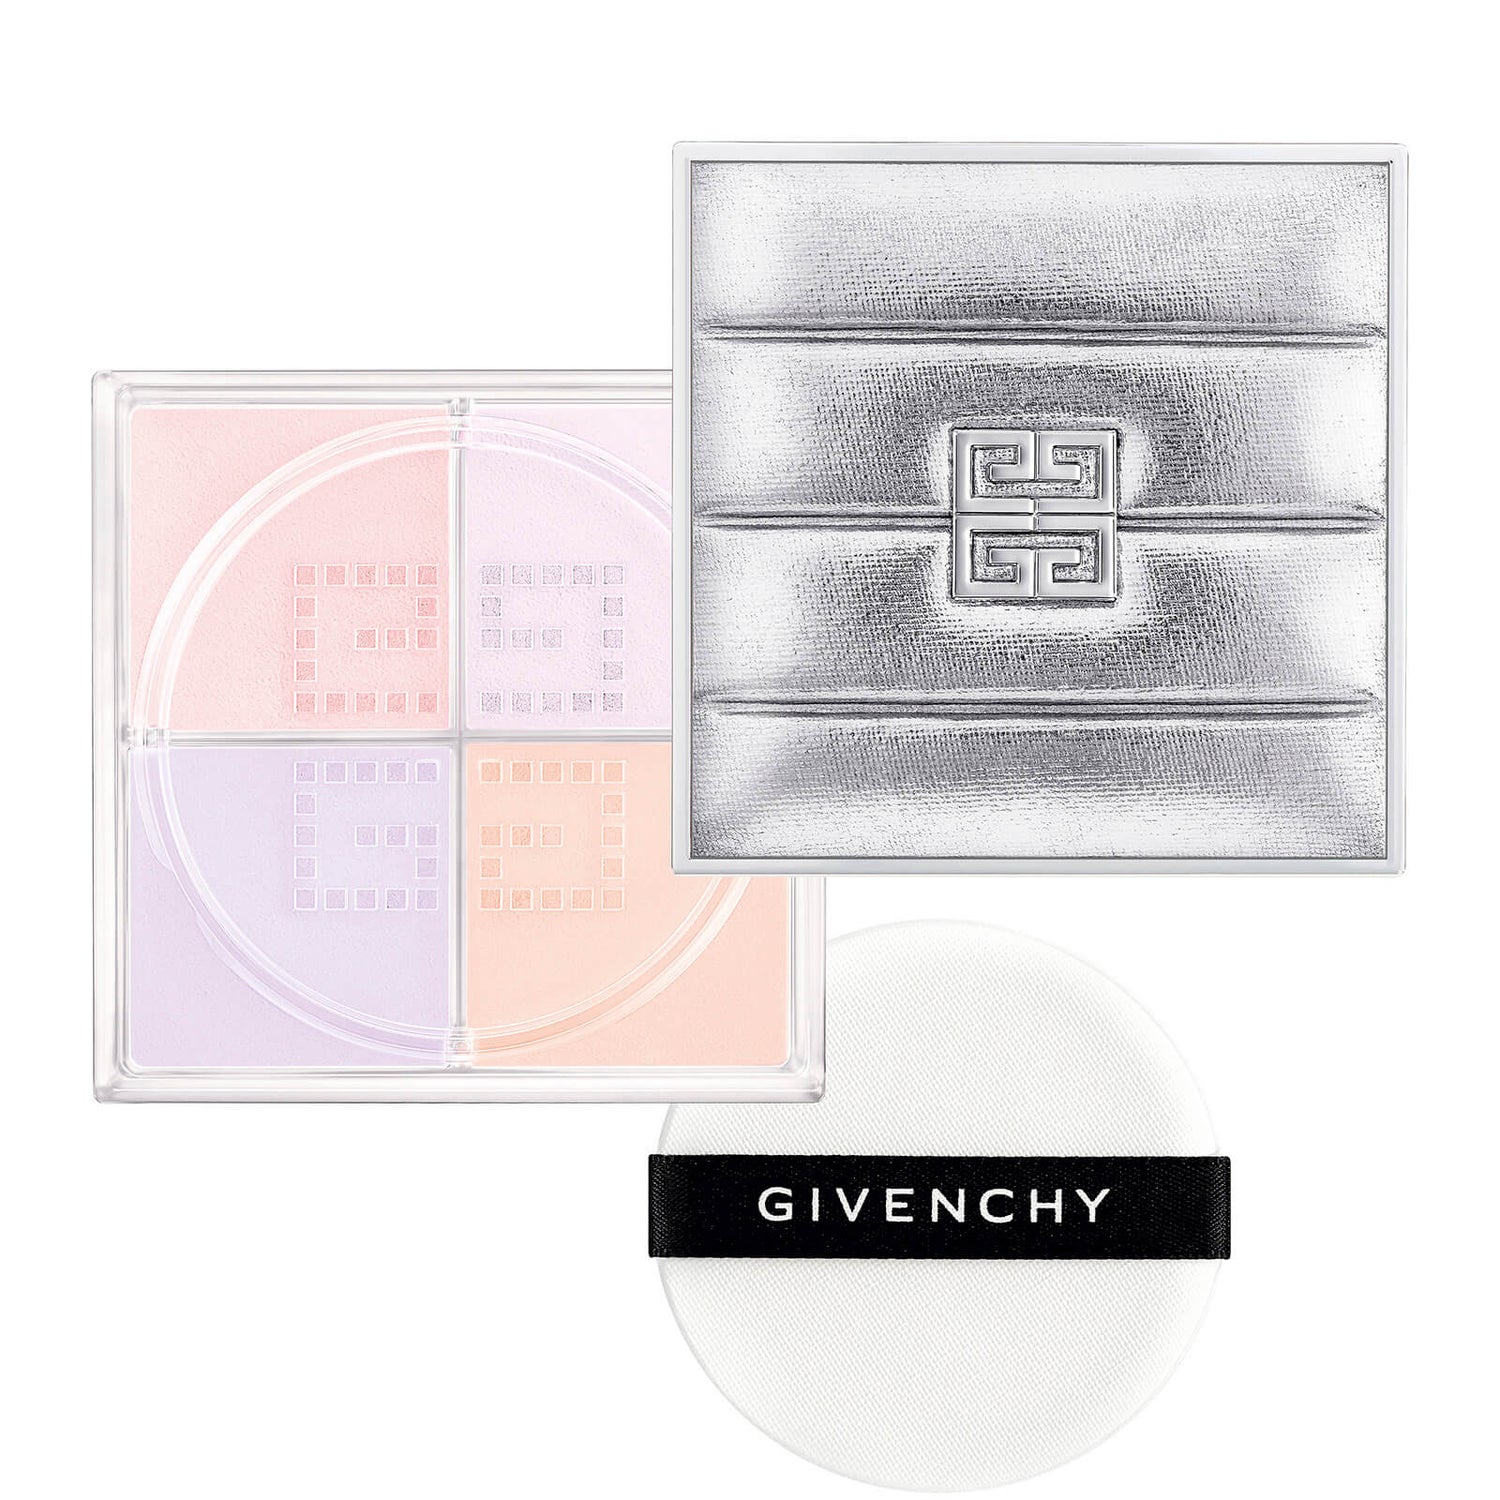 Givenchy Prisme Libre Loose Powder Christmas Limited Edition - N12 9g -  LOOKFANTASTIC